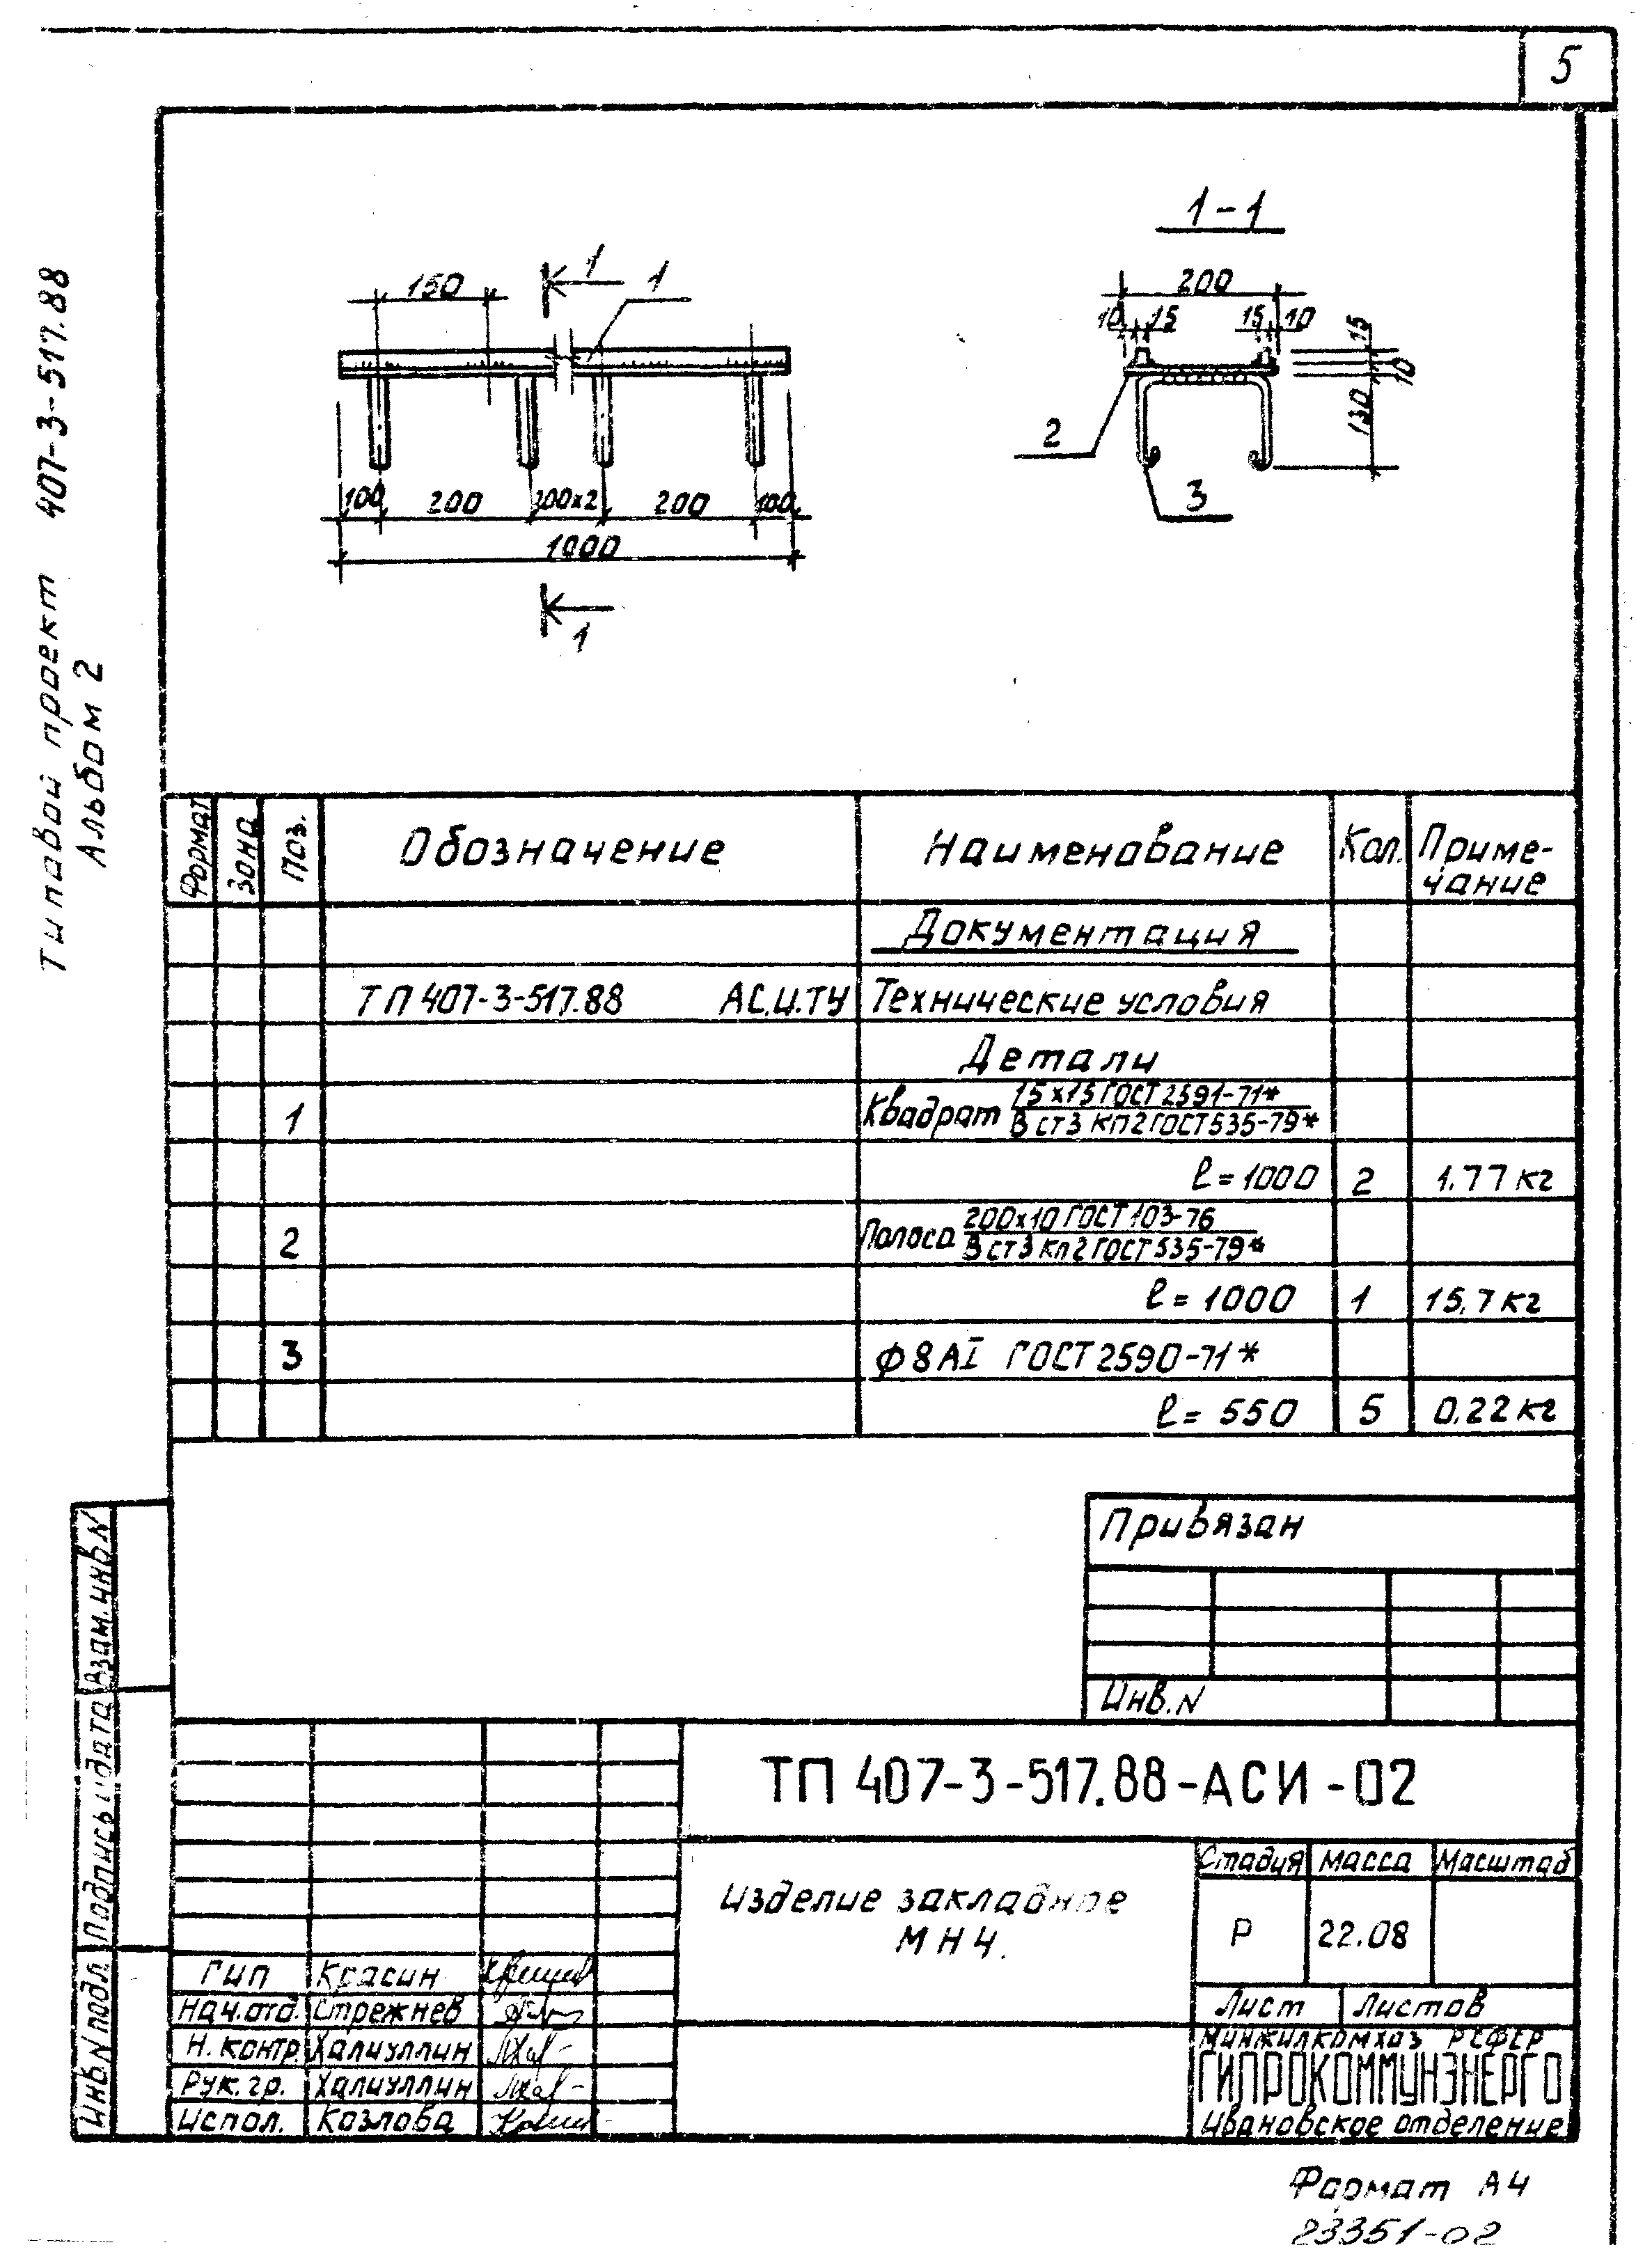 Типовой проект 407-3-515.88